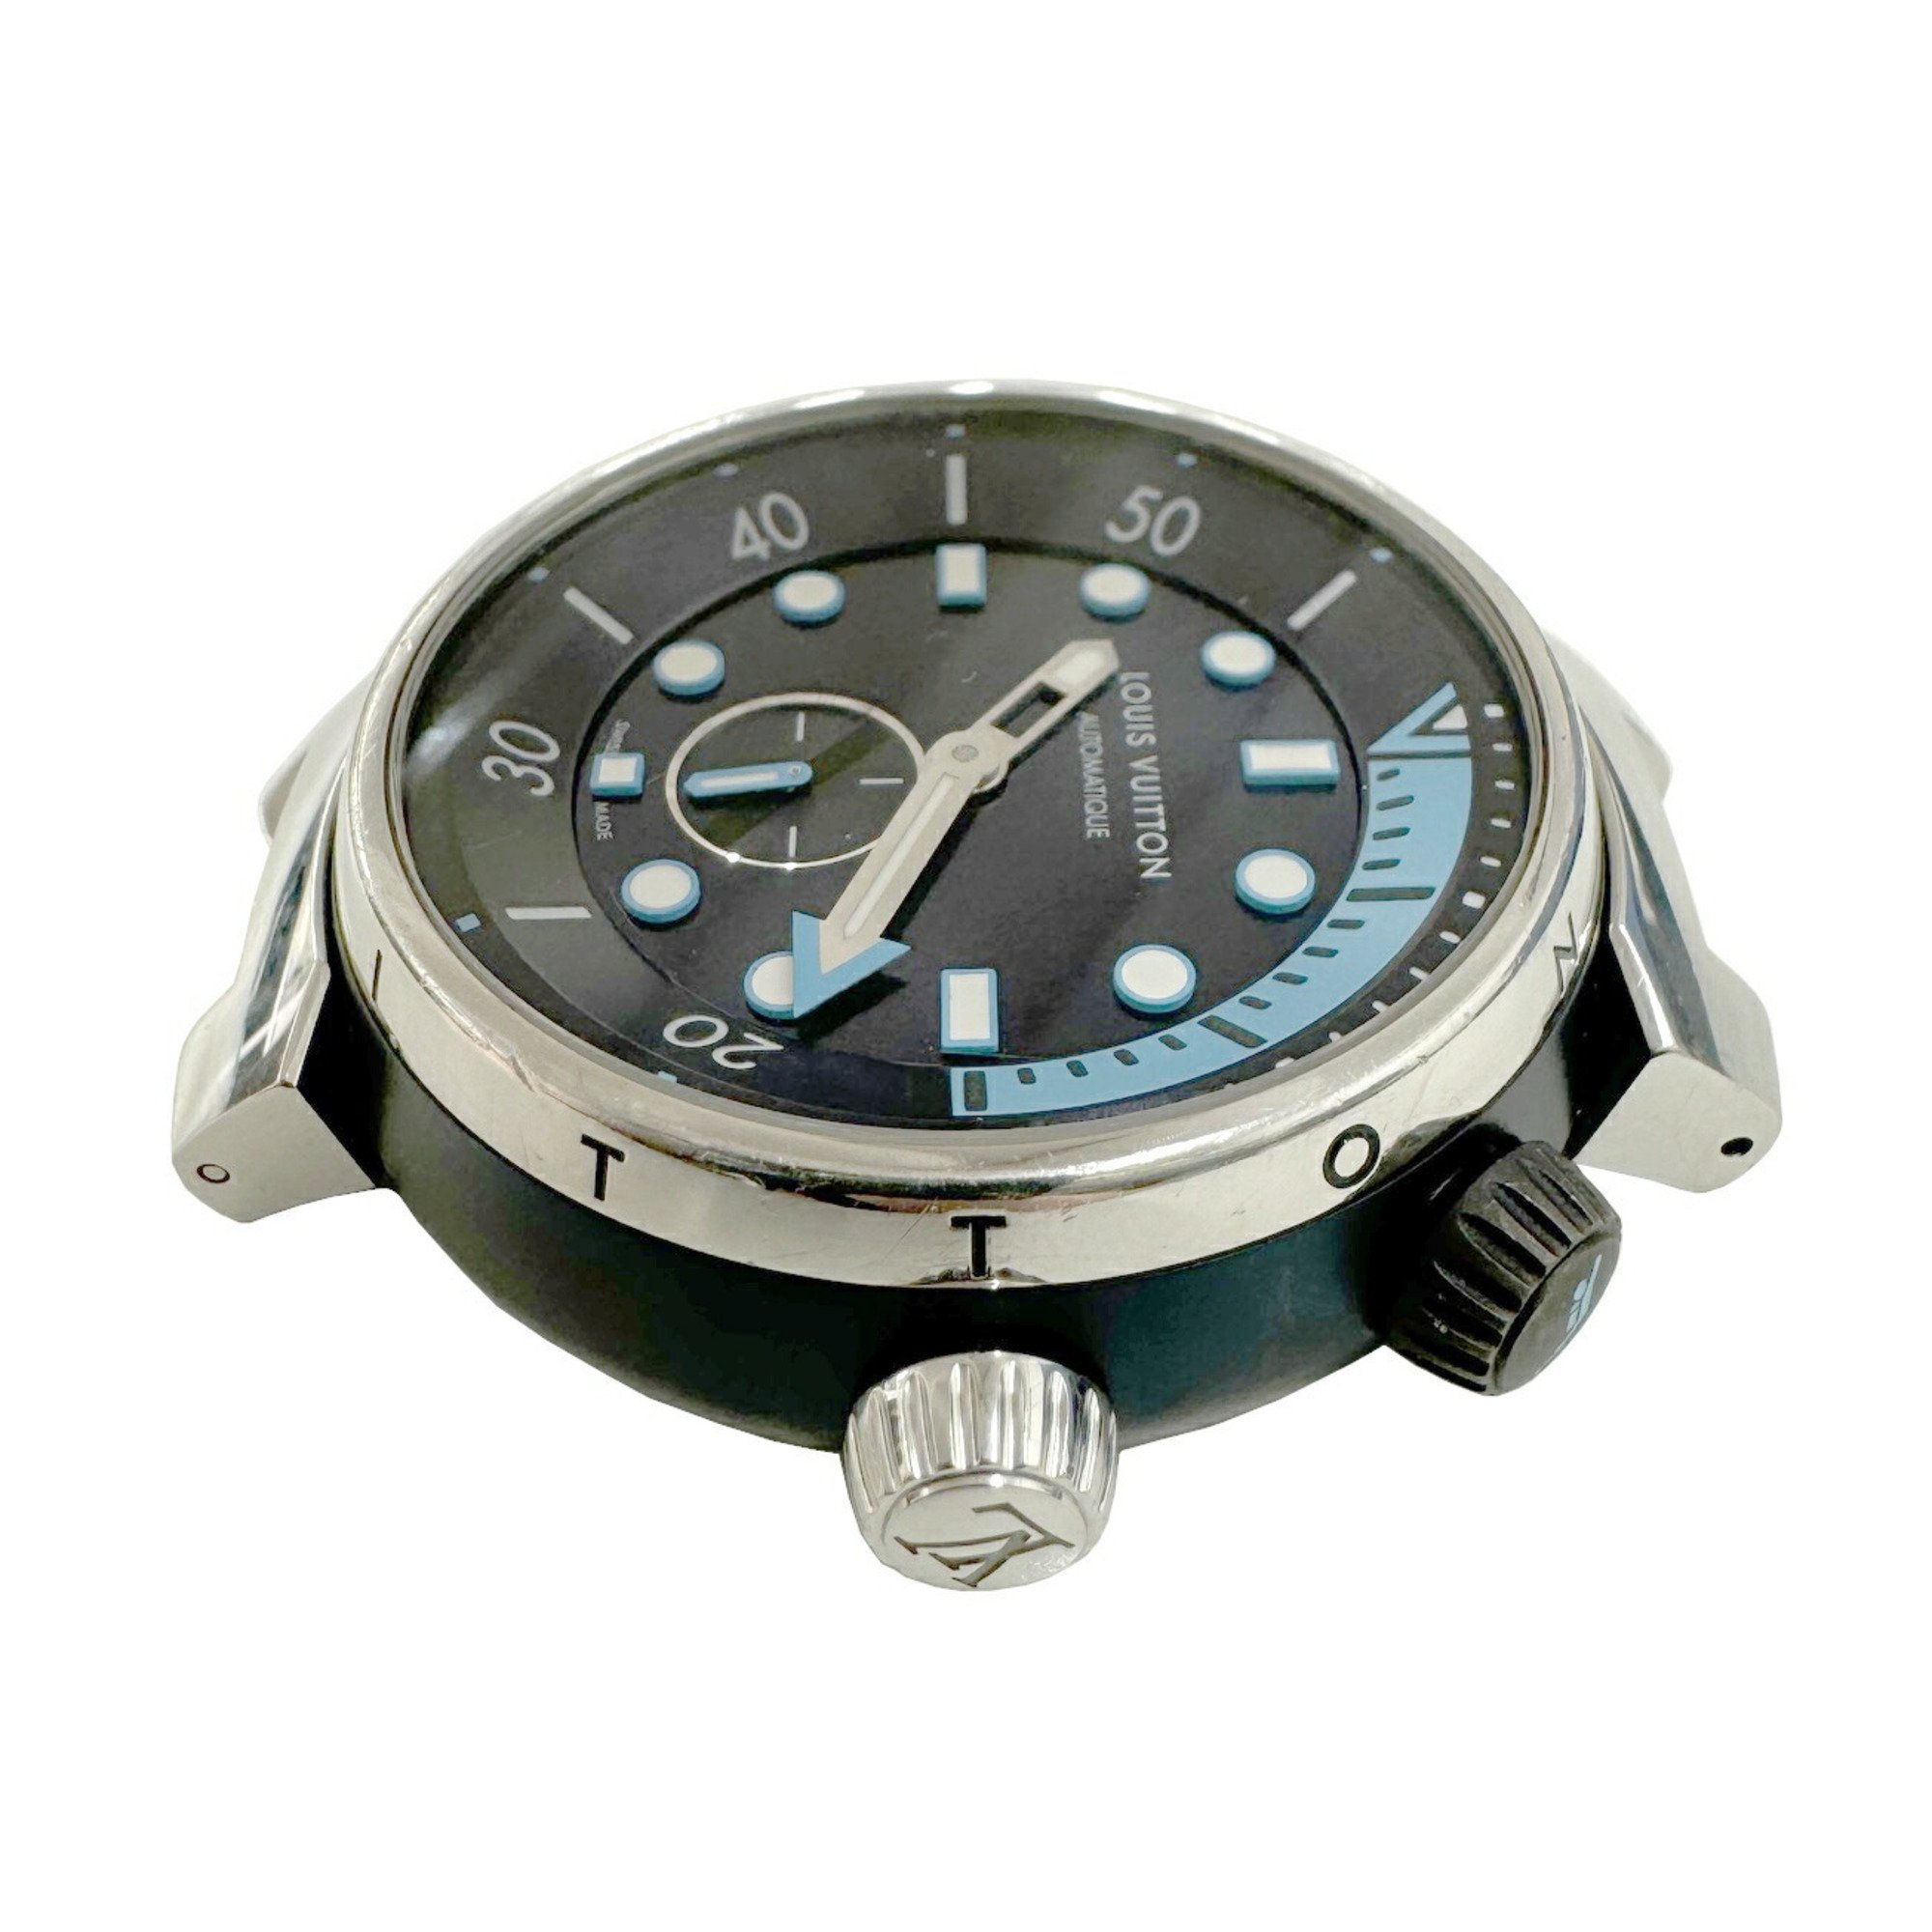 LOUIS VUITTON Louis Vuitton Tambour Street Diver Skyline Blue QA121Z Automatic Men's Women's Watch